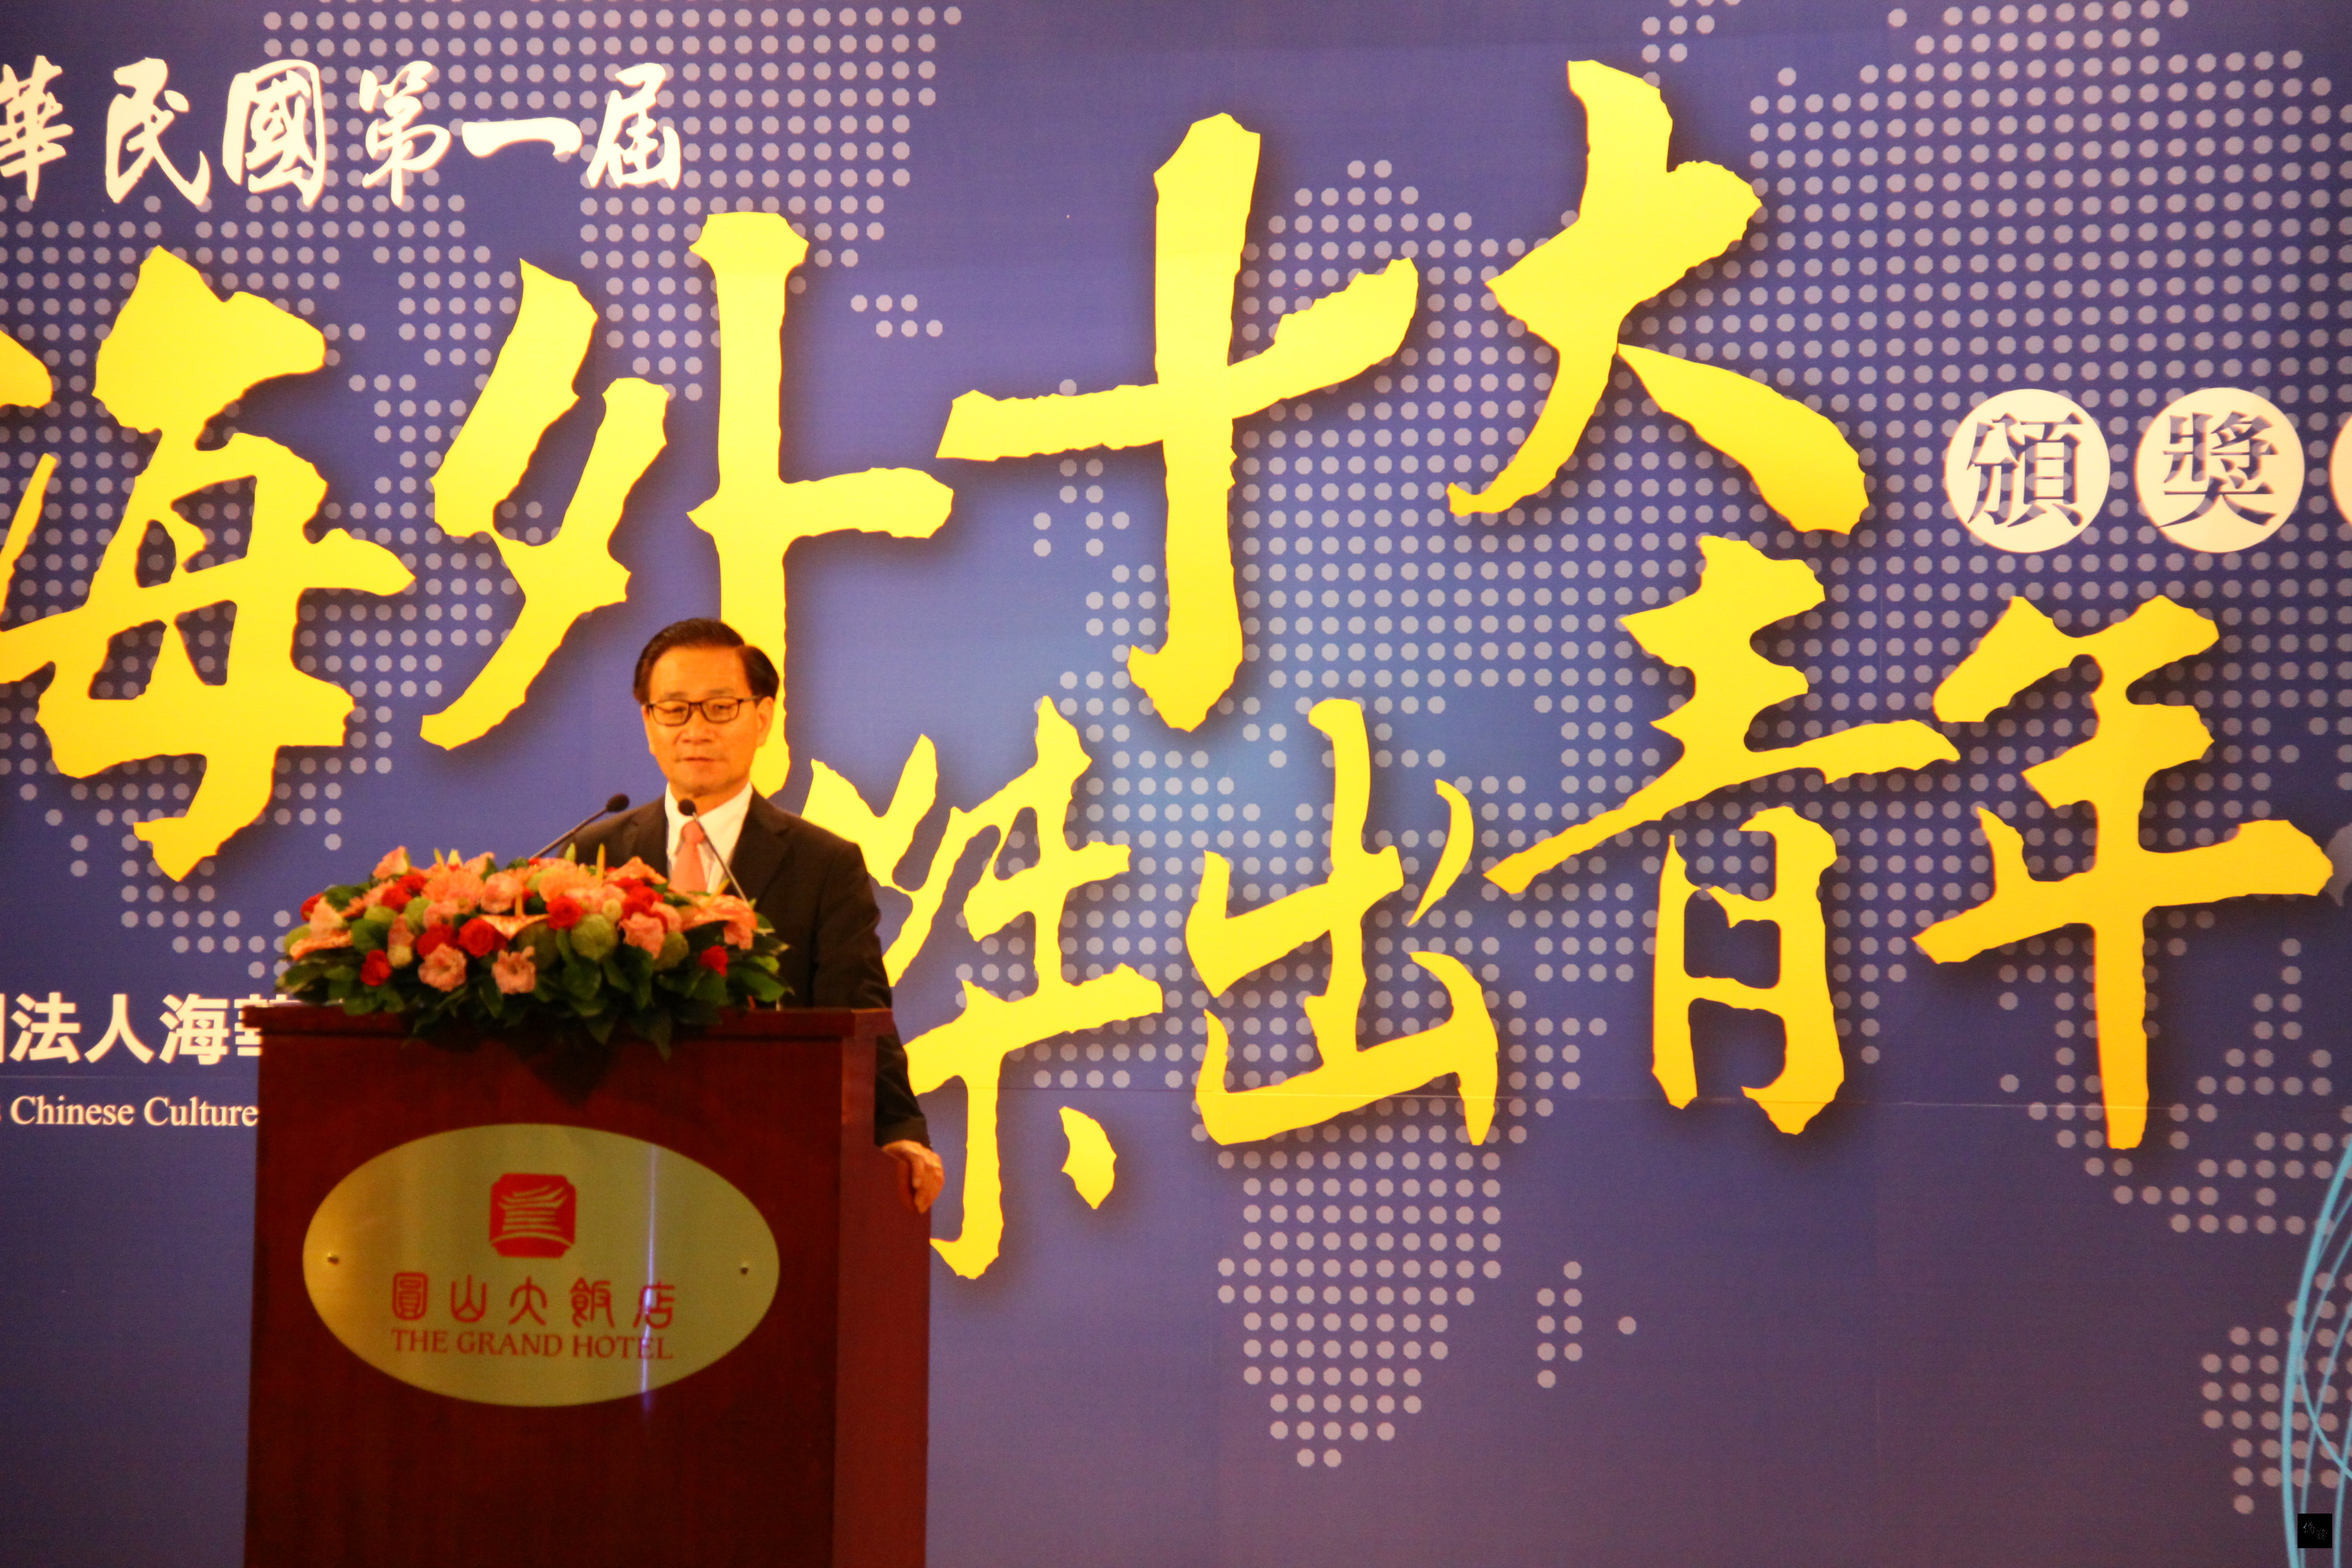 海華文教基金會董事長吳松柏提到，舉辦海外十大傑出青年獎，希望發掘及表揚傑出的華裔青年，讓他們成為台灣及僑社發展的重要力量。